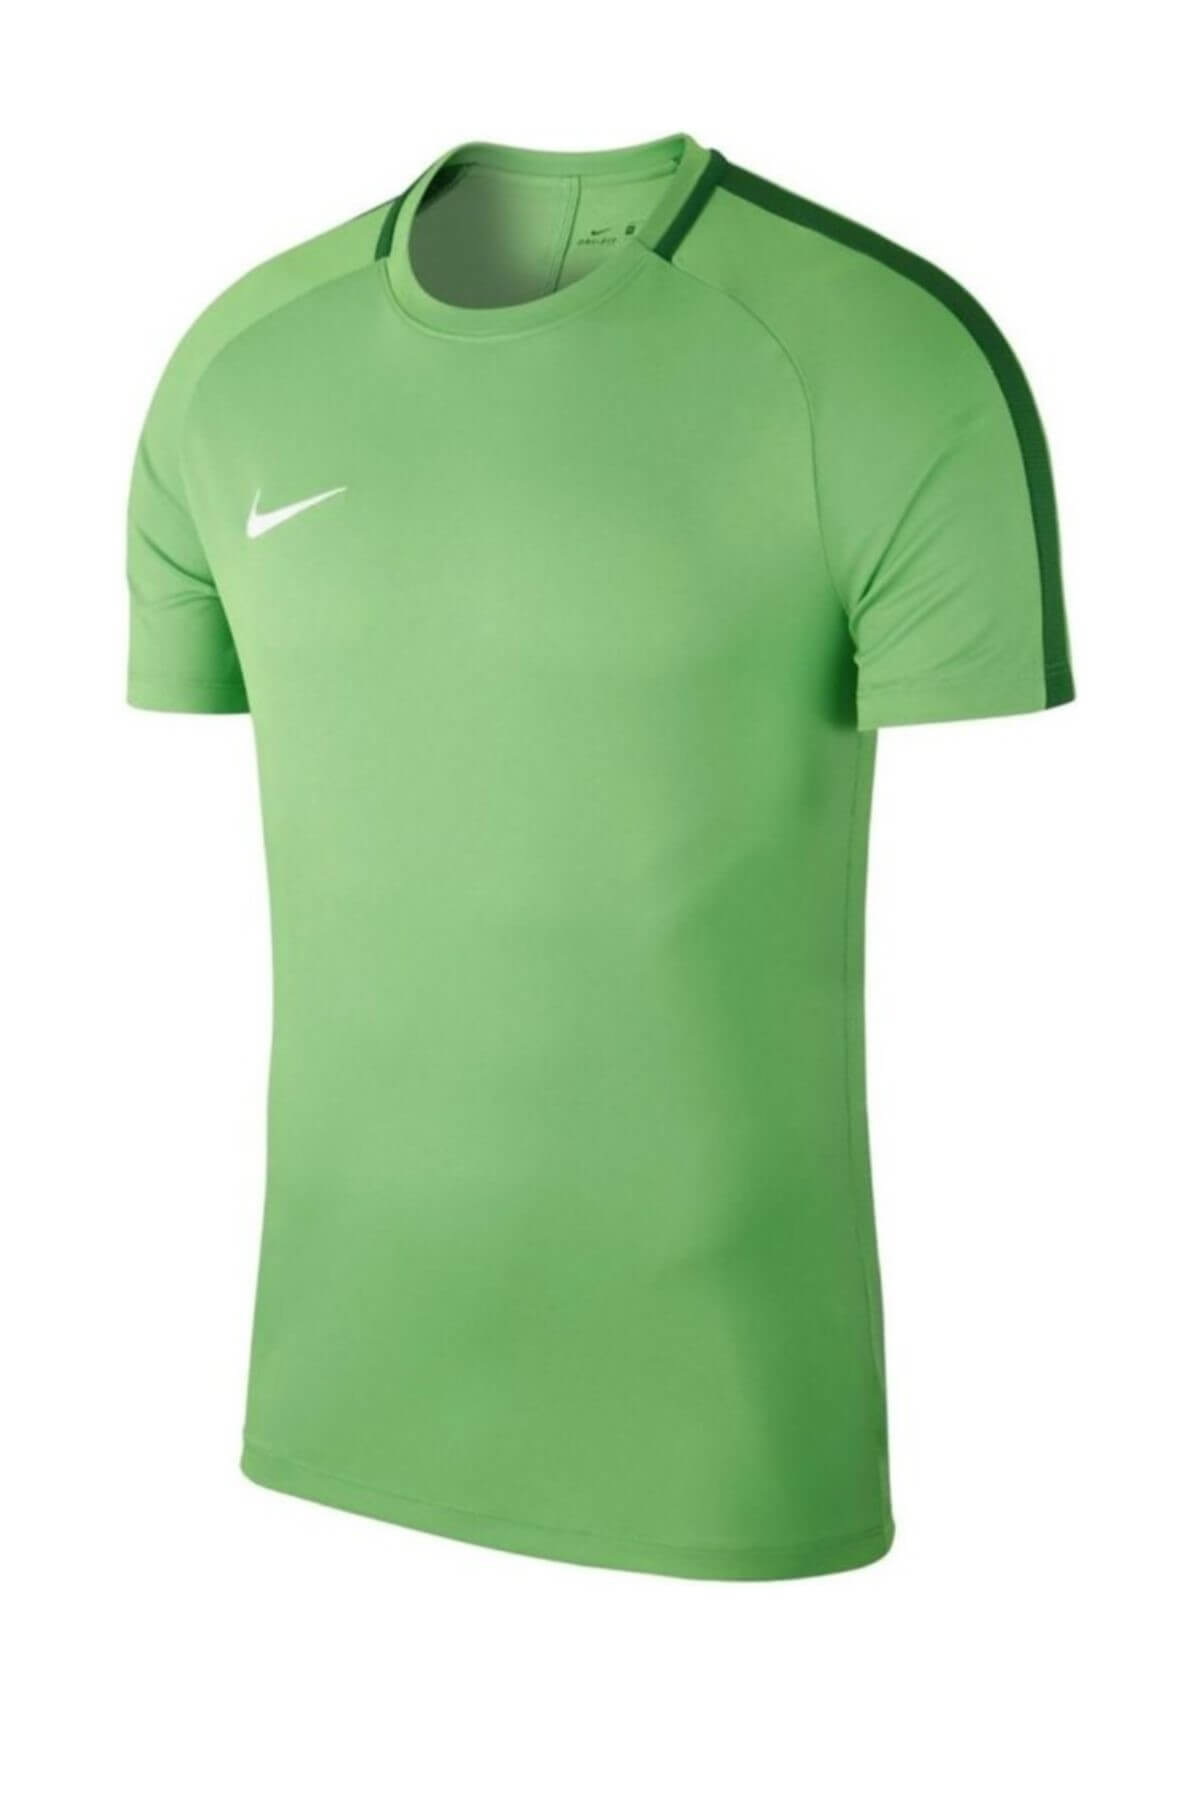 تیشرت ورزشی مردانه نایک سبز Nike